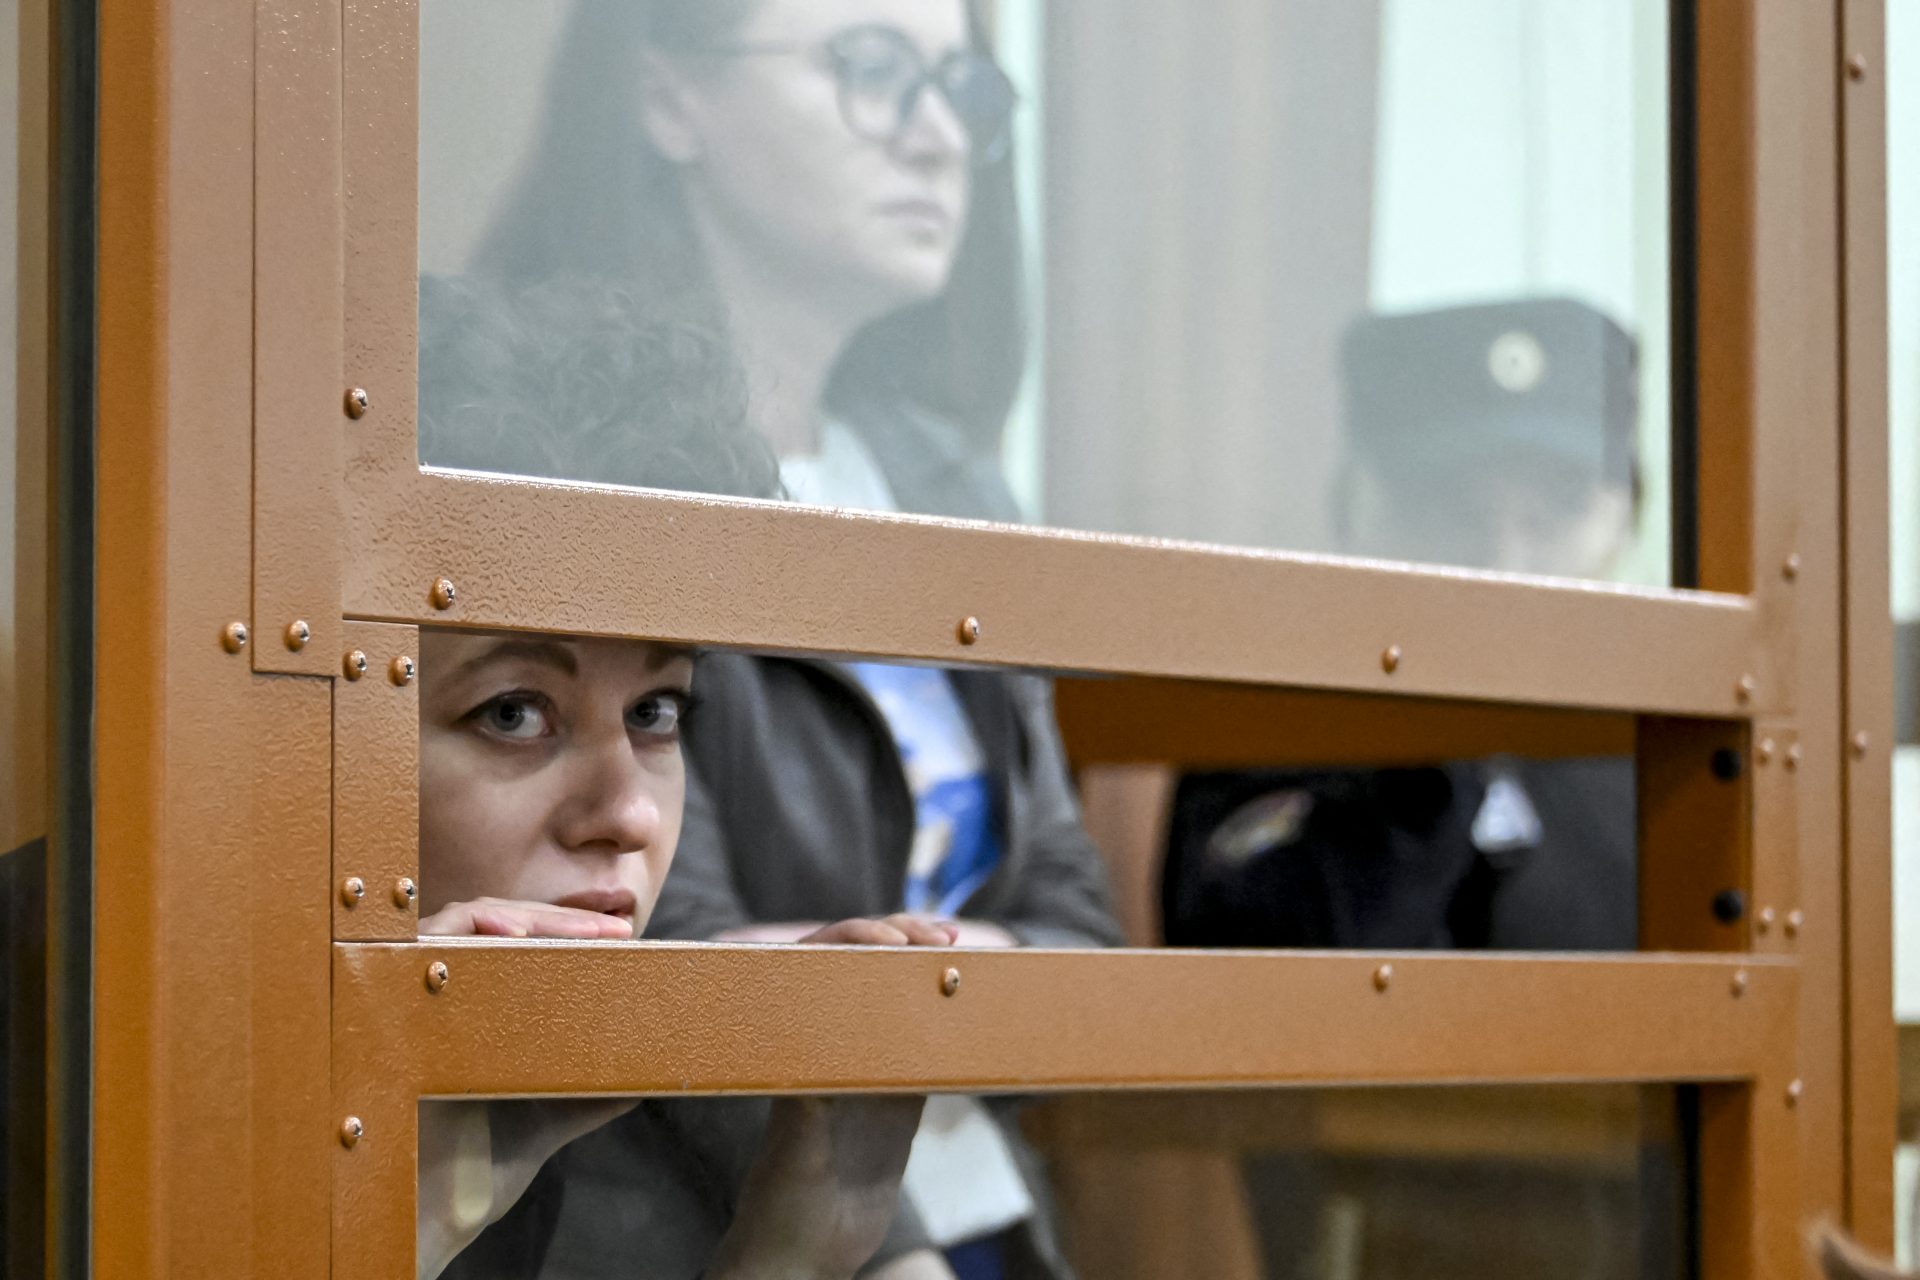 Podrían acabar 7 años en prisión por una obra de teatro: ¿de qué se acusa a Evgenia Berkovich y Svetlana Petriychuk?